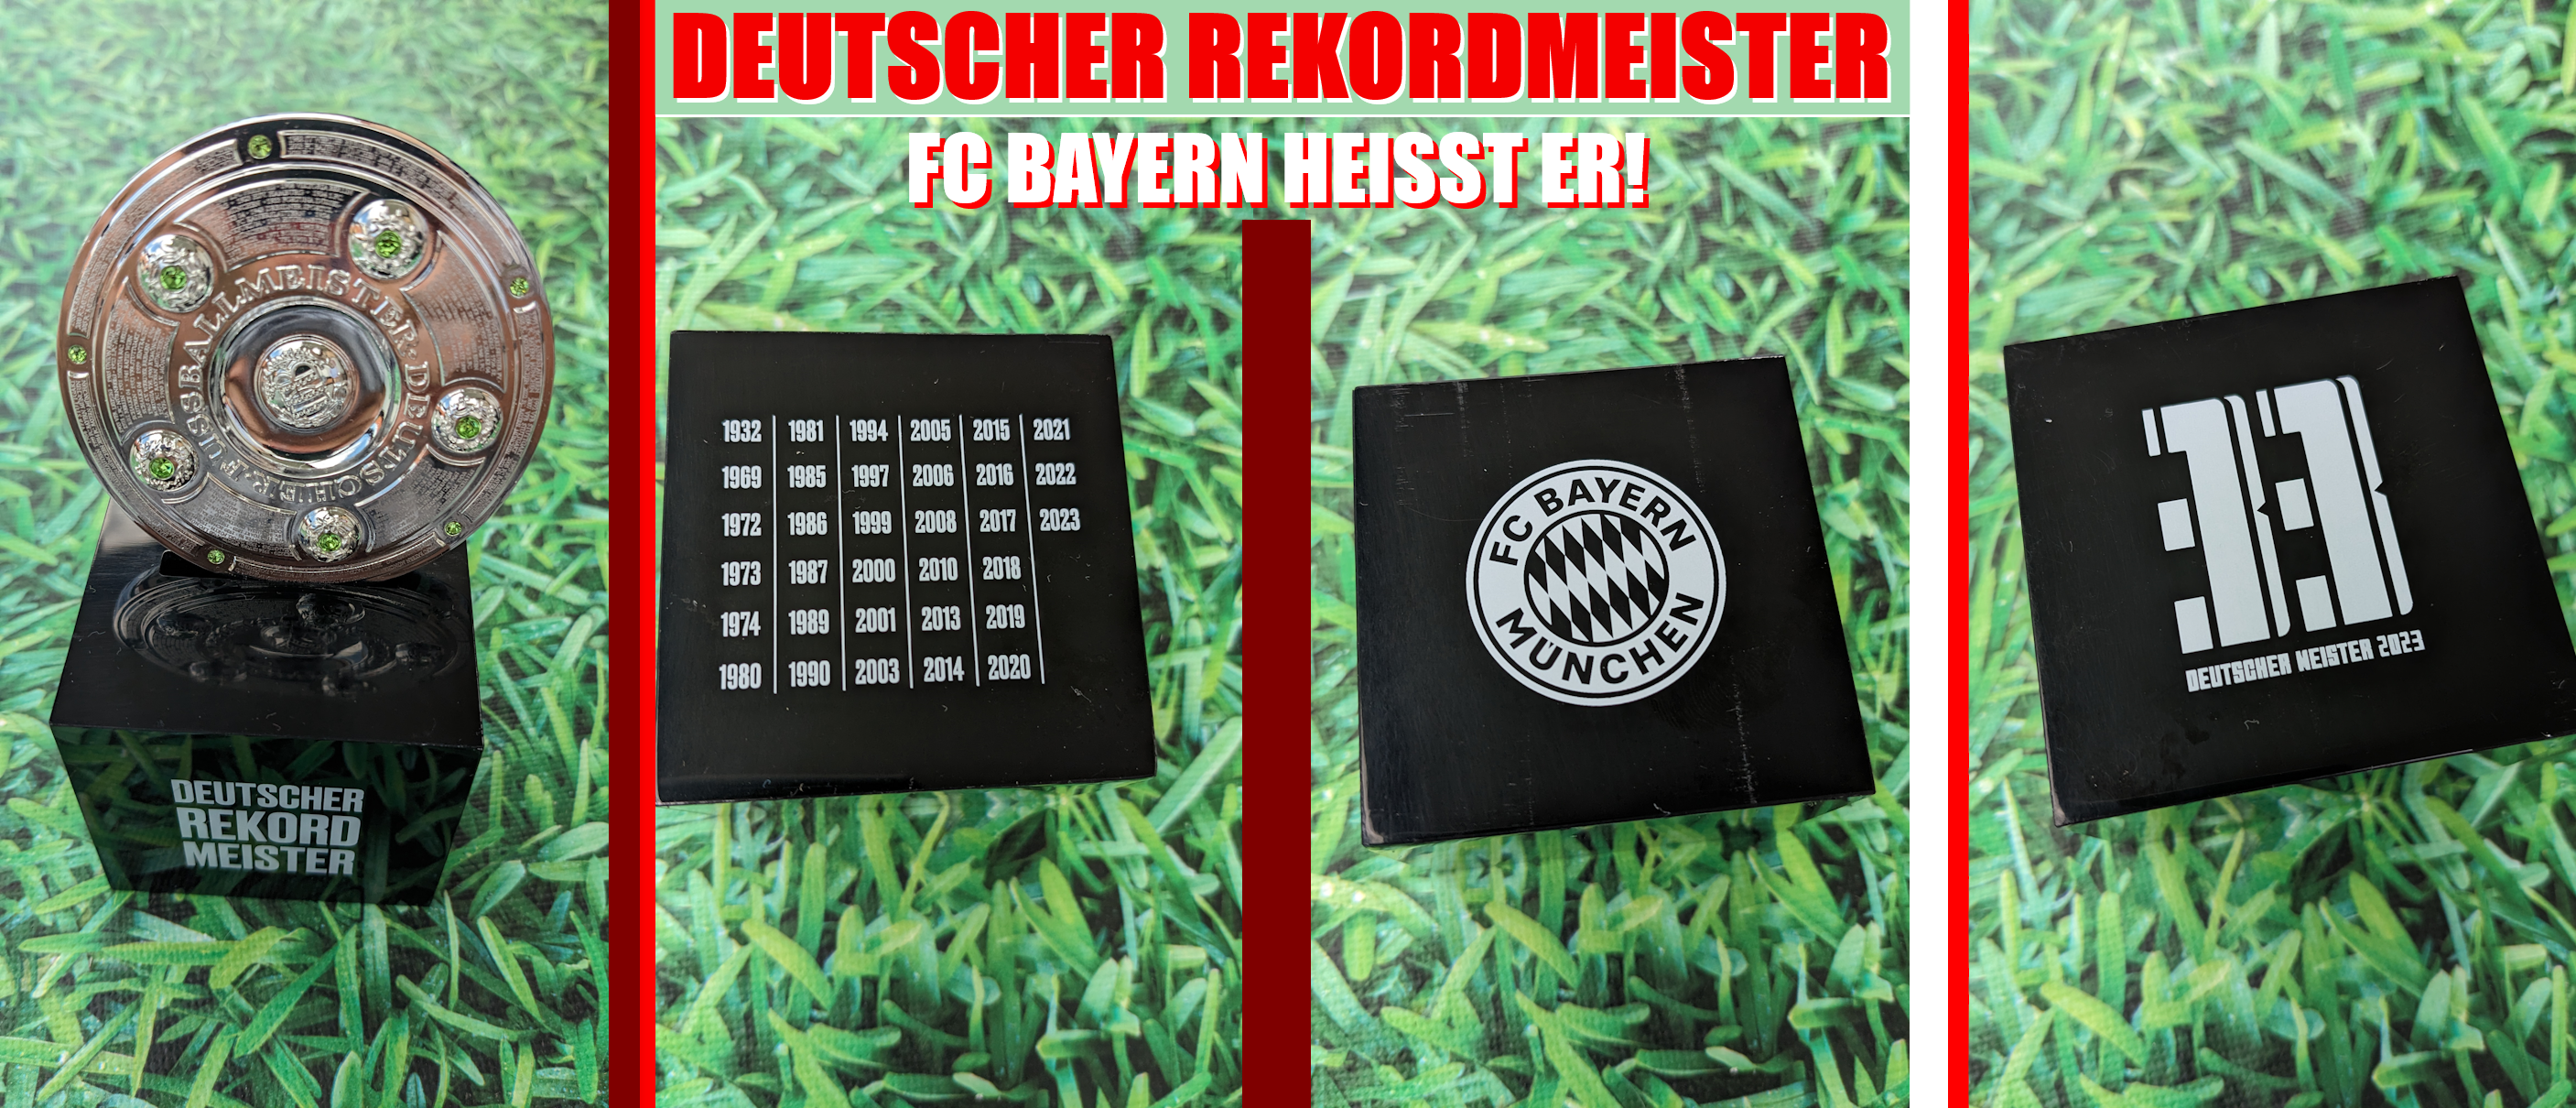 DEUTSCHER MEISTER - FC BAYERN HEISST ER!